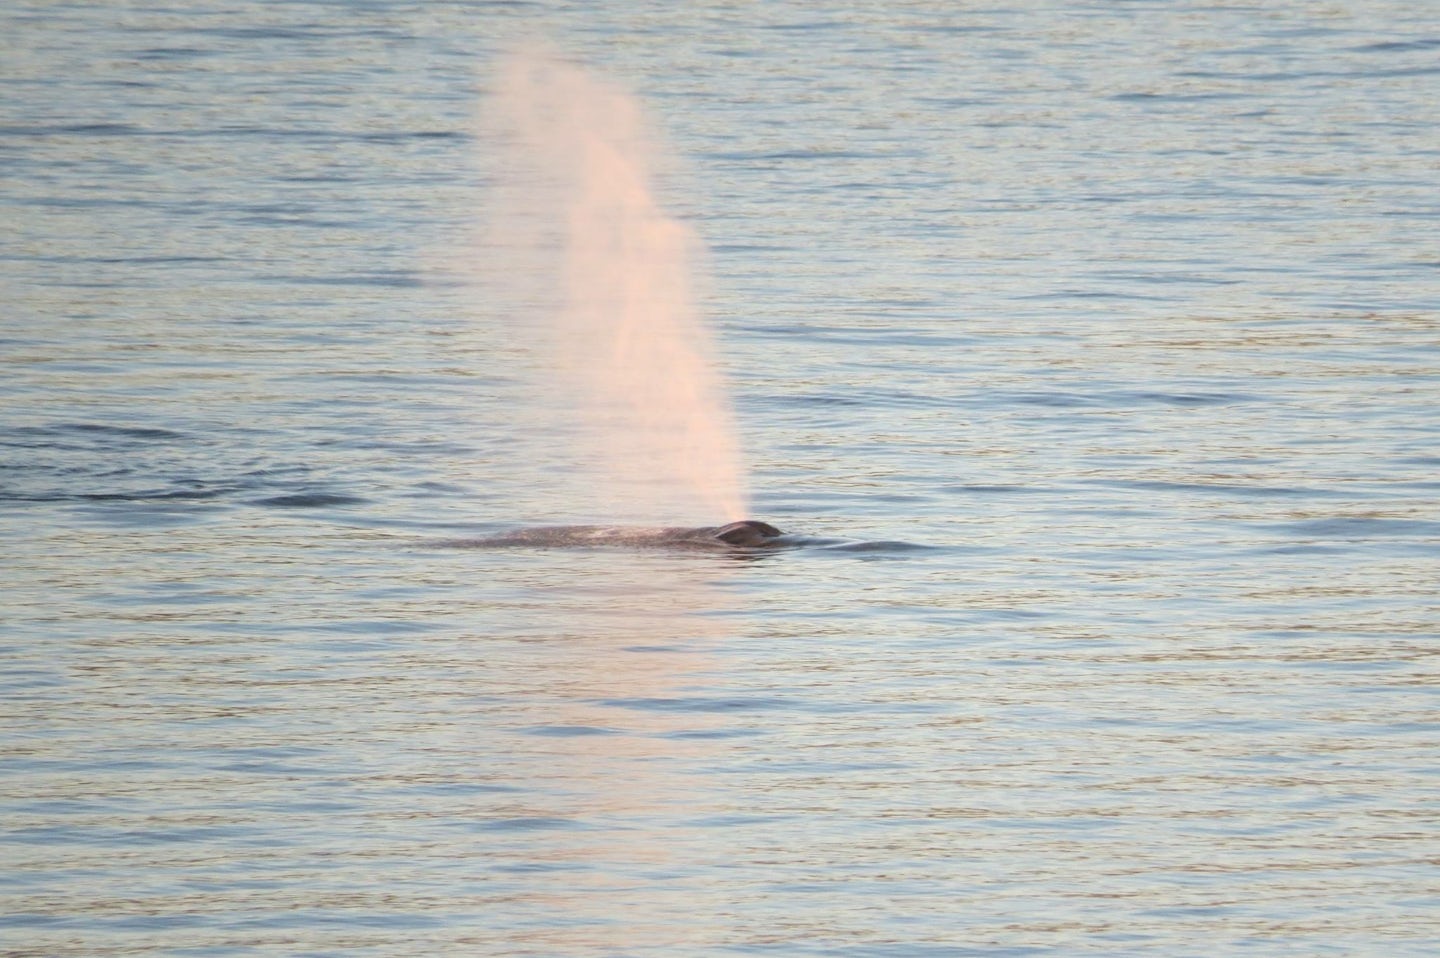 Loved seeing whales in Alaska!